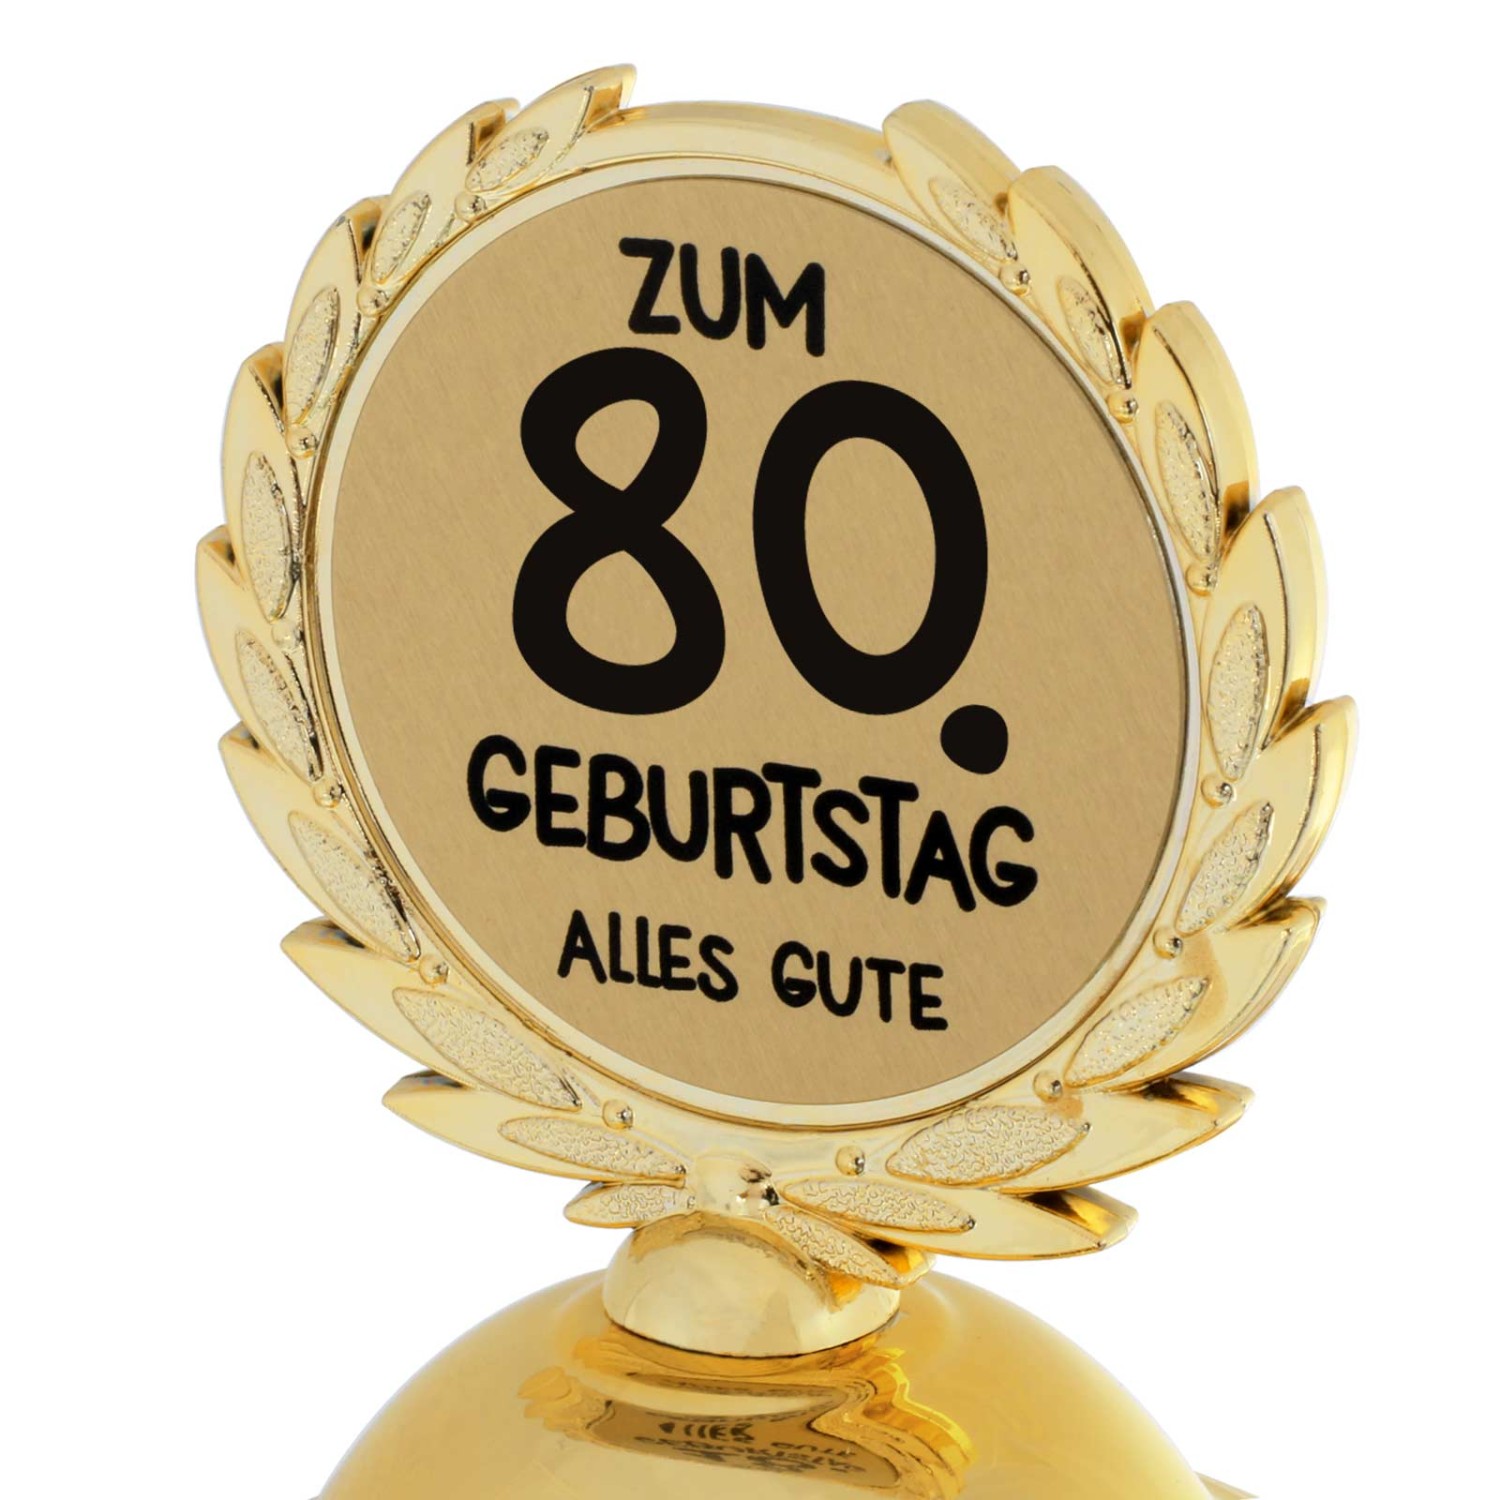 1. Foto Pokal 80. Geburtstag Geschenk 31cm groß (Jahreszahl Geburtstag: 80)